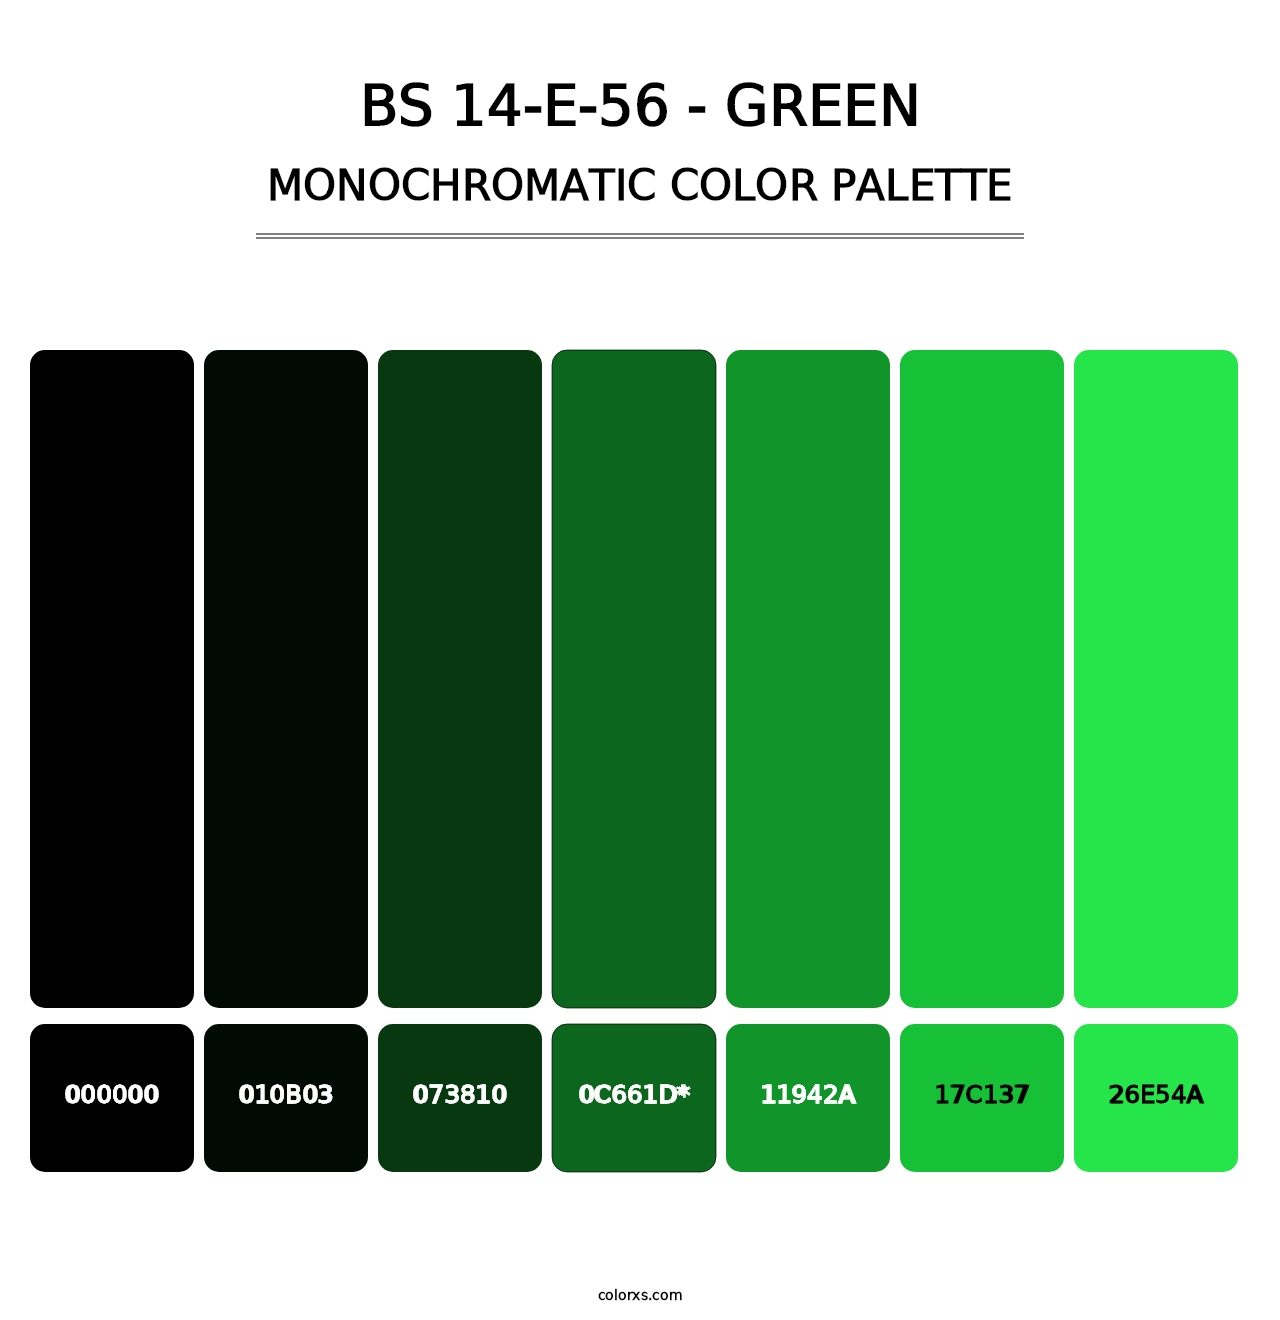 BS 14-E-56 - Green - Monochromatic Color Palette